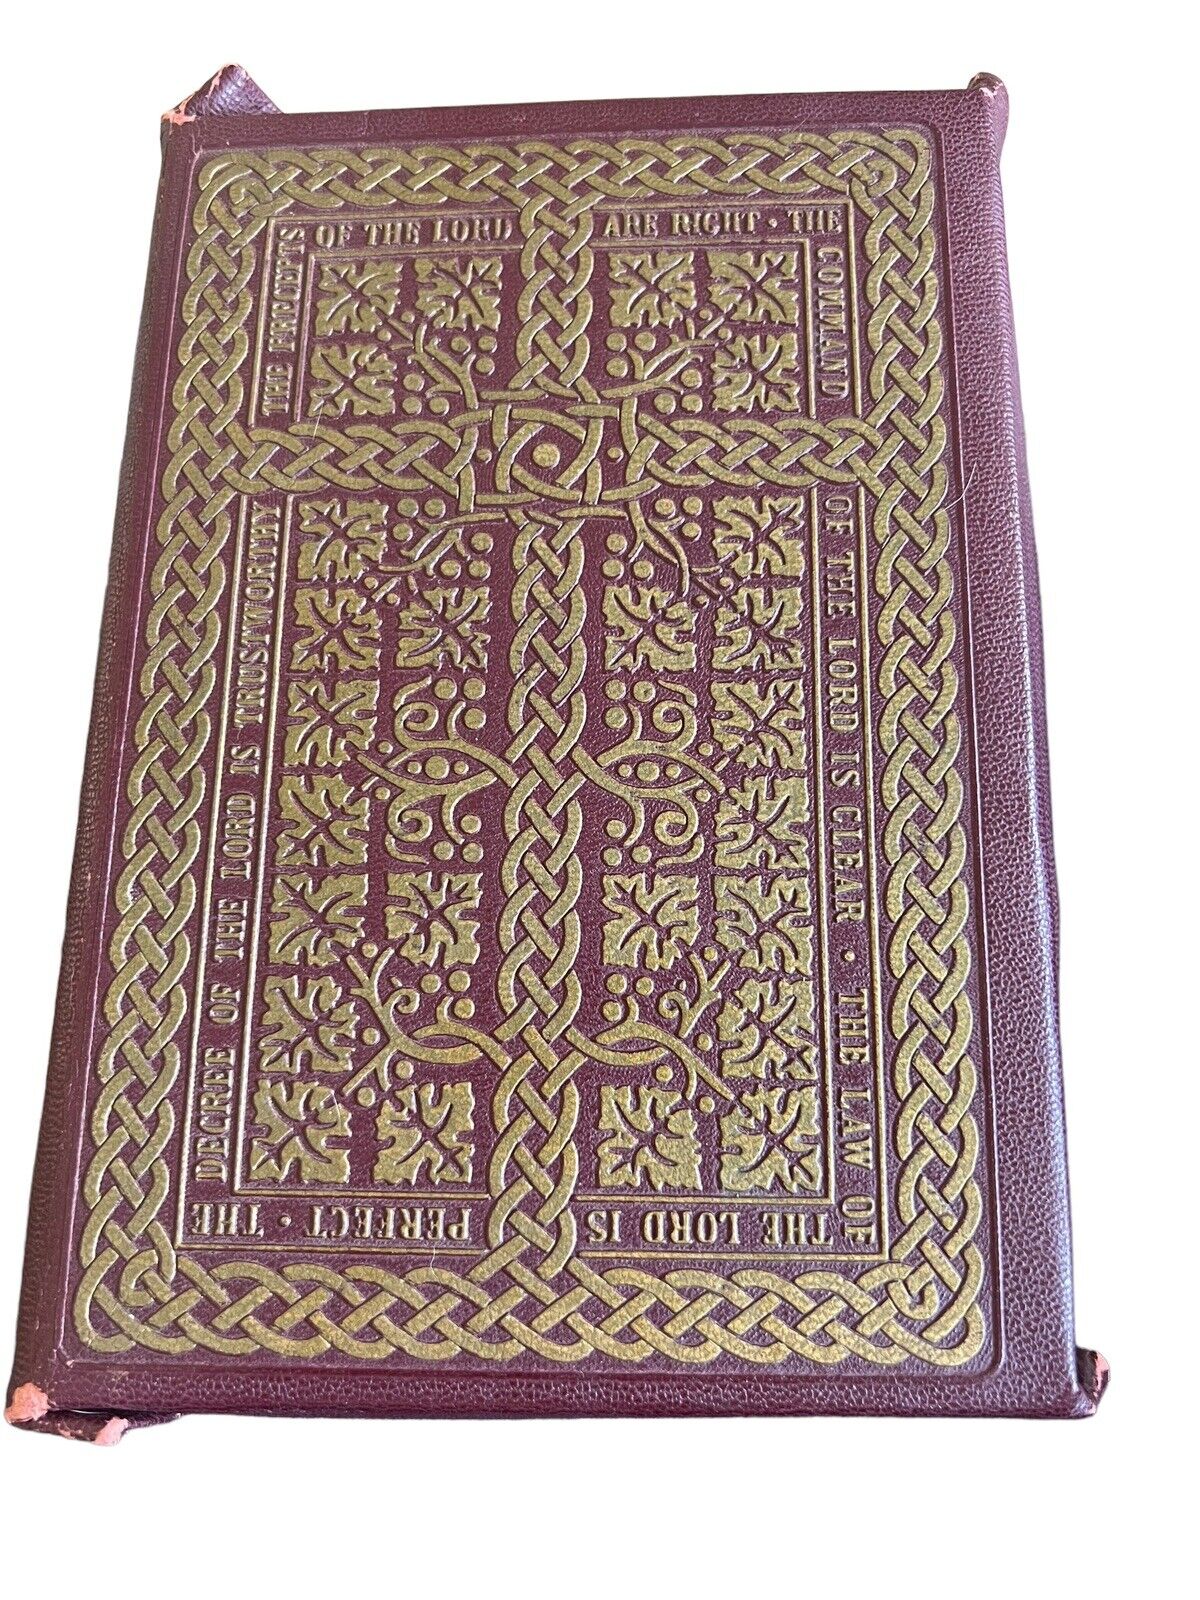 The Holy Bible Holy Trinity Edition Catholic Bible Copyright 1951 Catholic Press